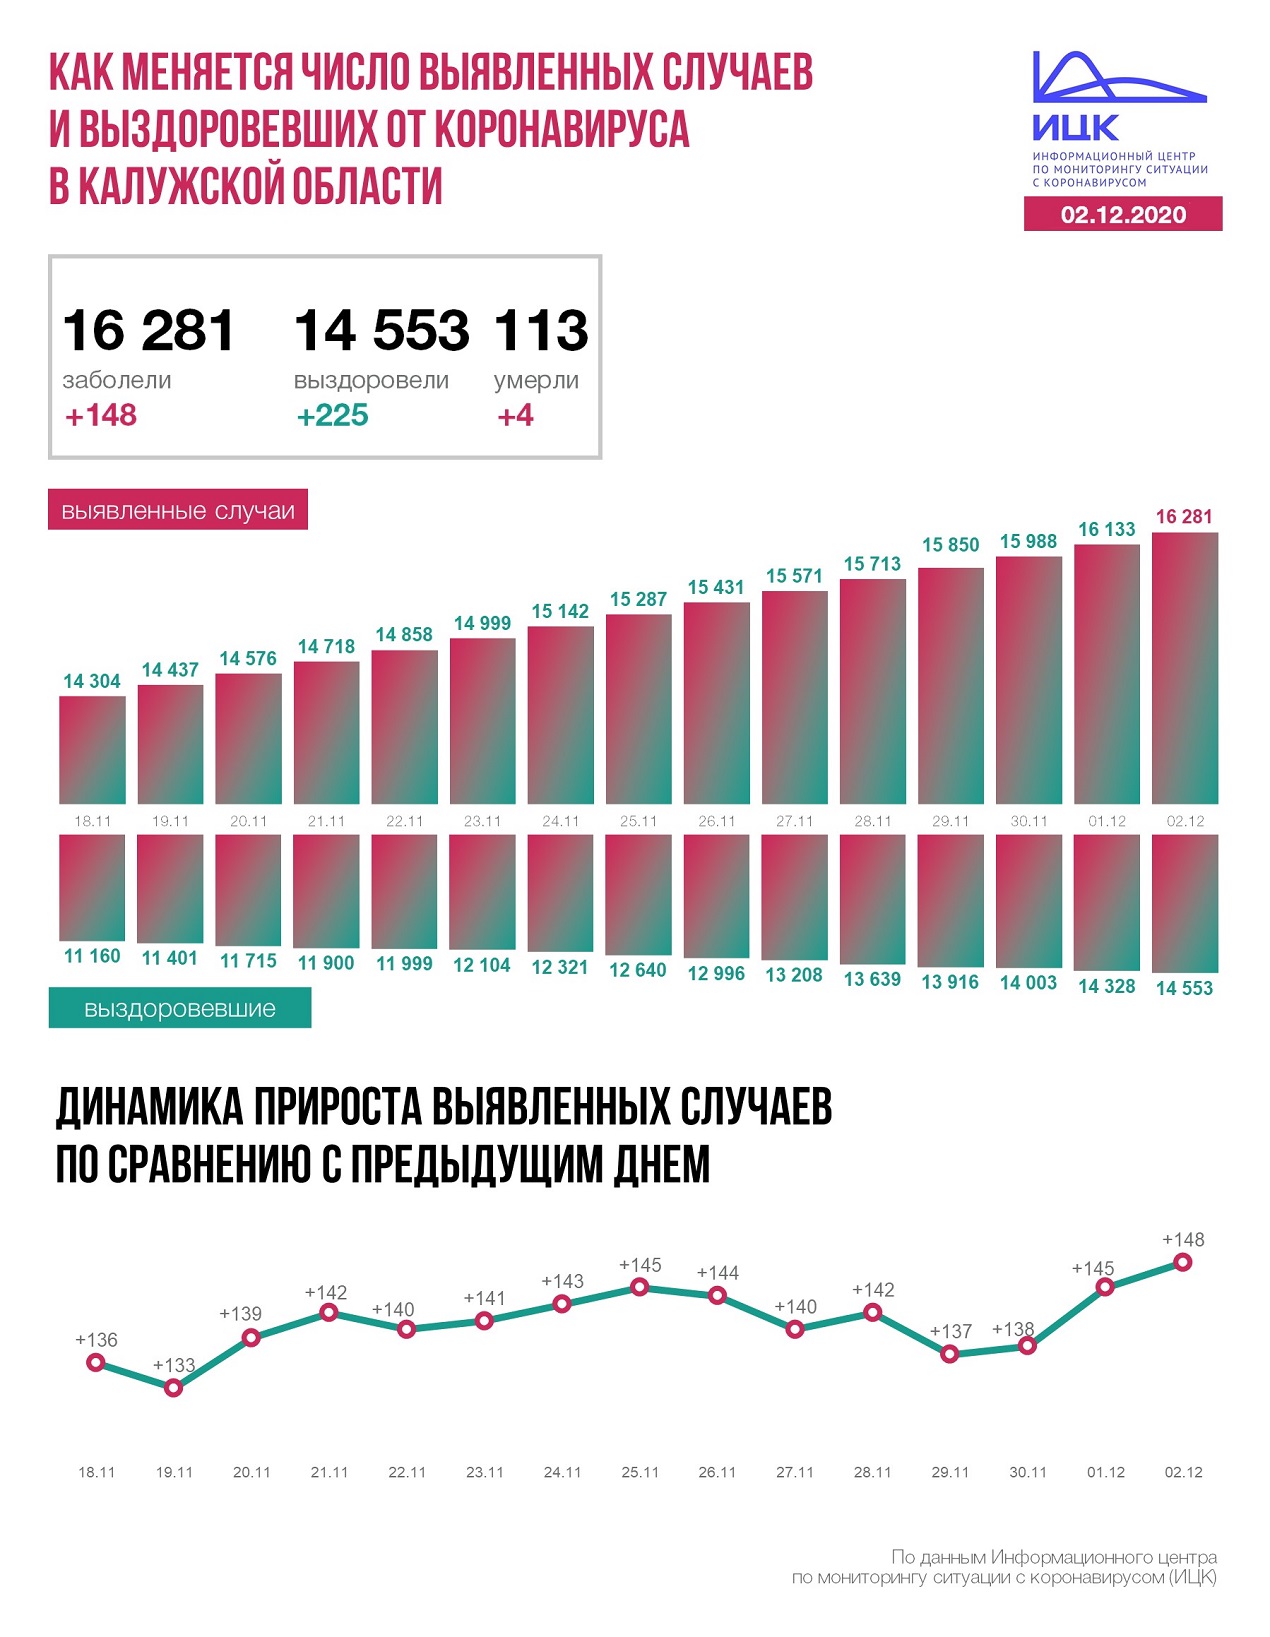 Официальные данные по коронавирусу в Калужской области на 2 декабря 2020 года.